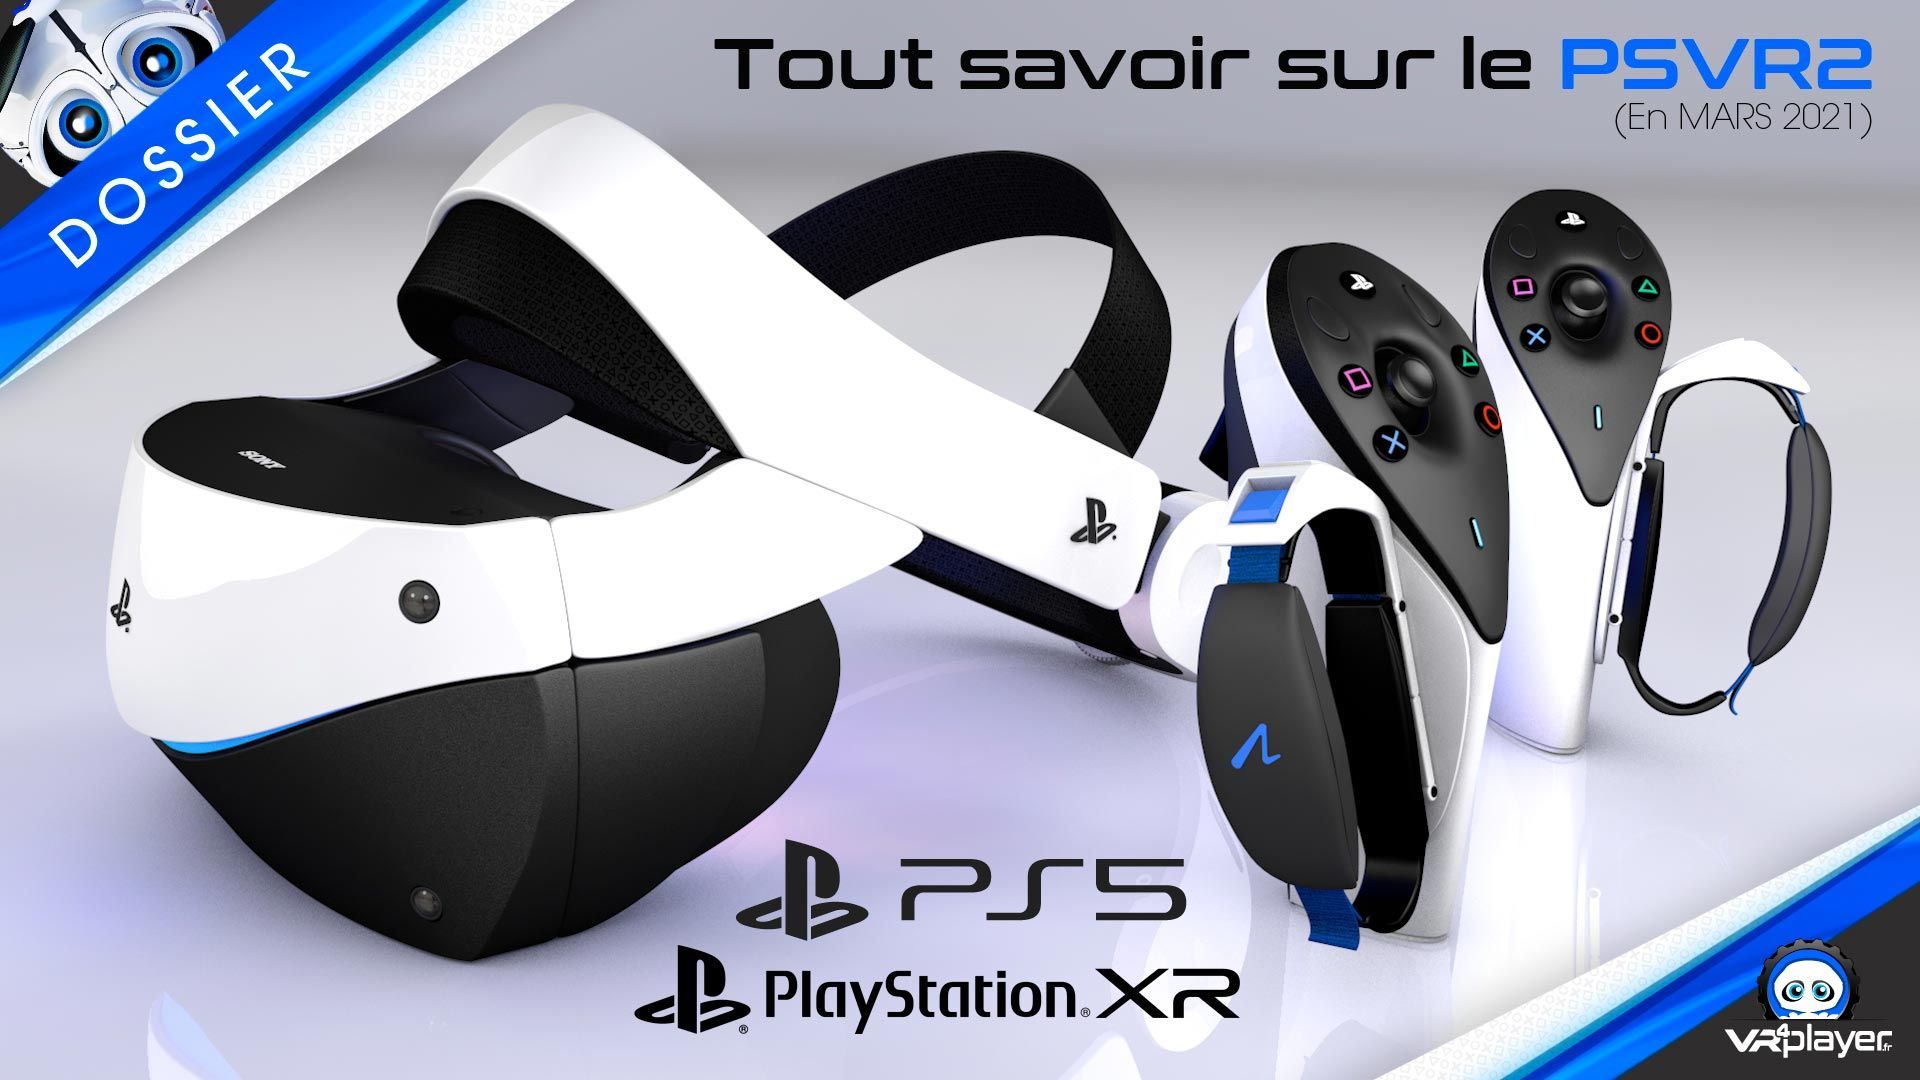 PS5 PlayStation VR 2 PSVR 2 : Notre dossier complet de 45 minutes